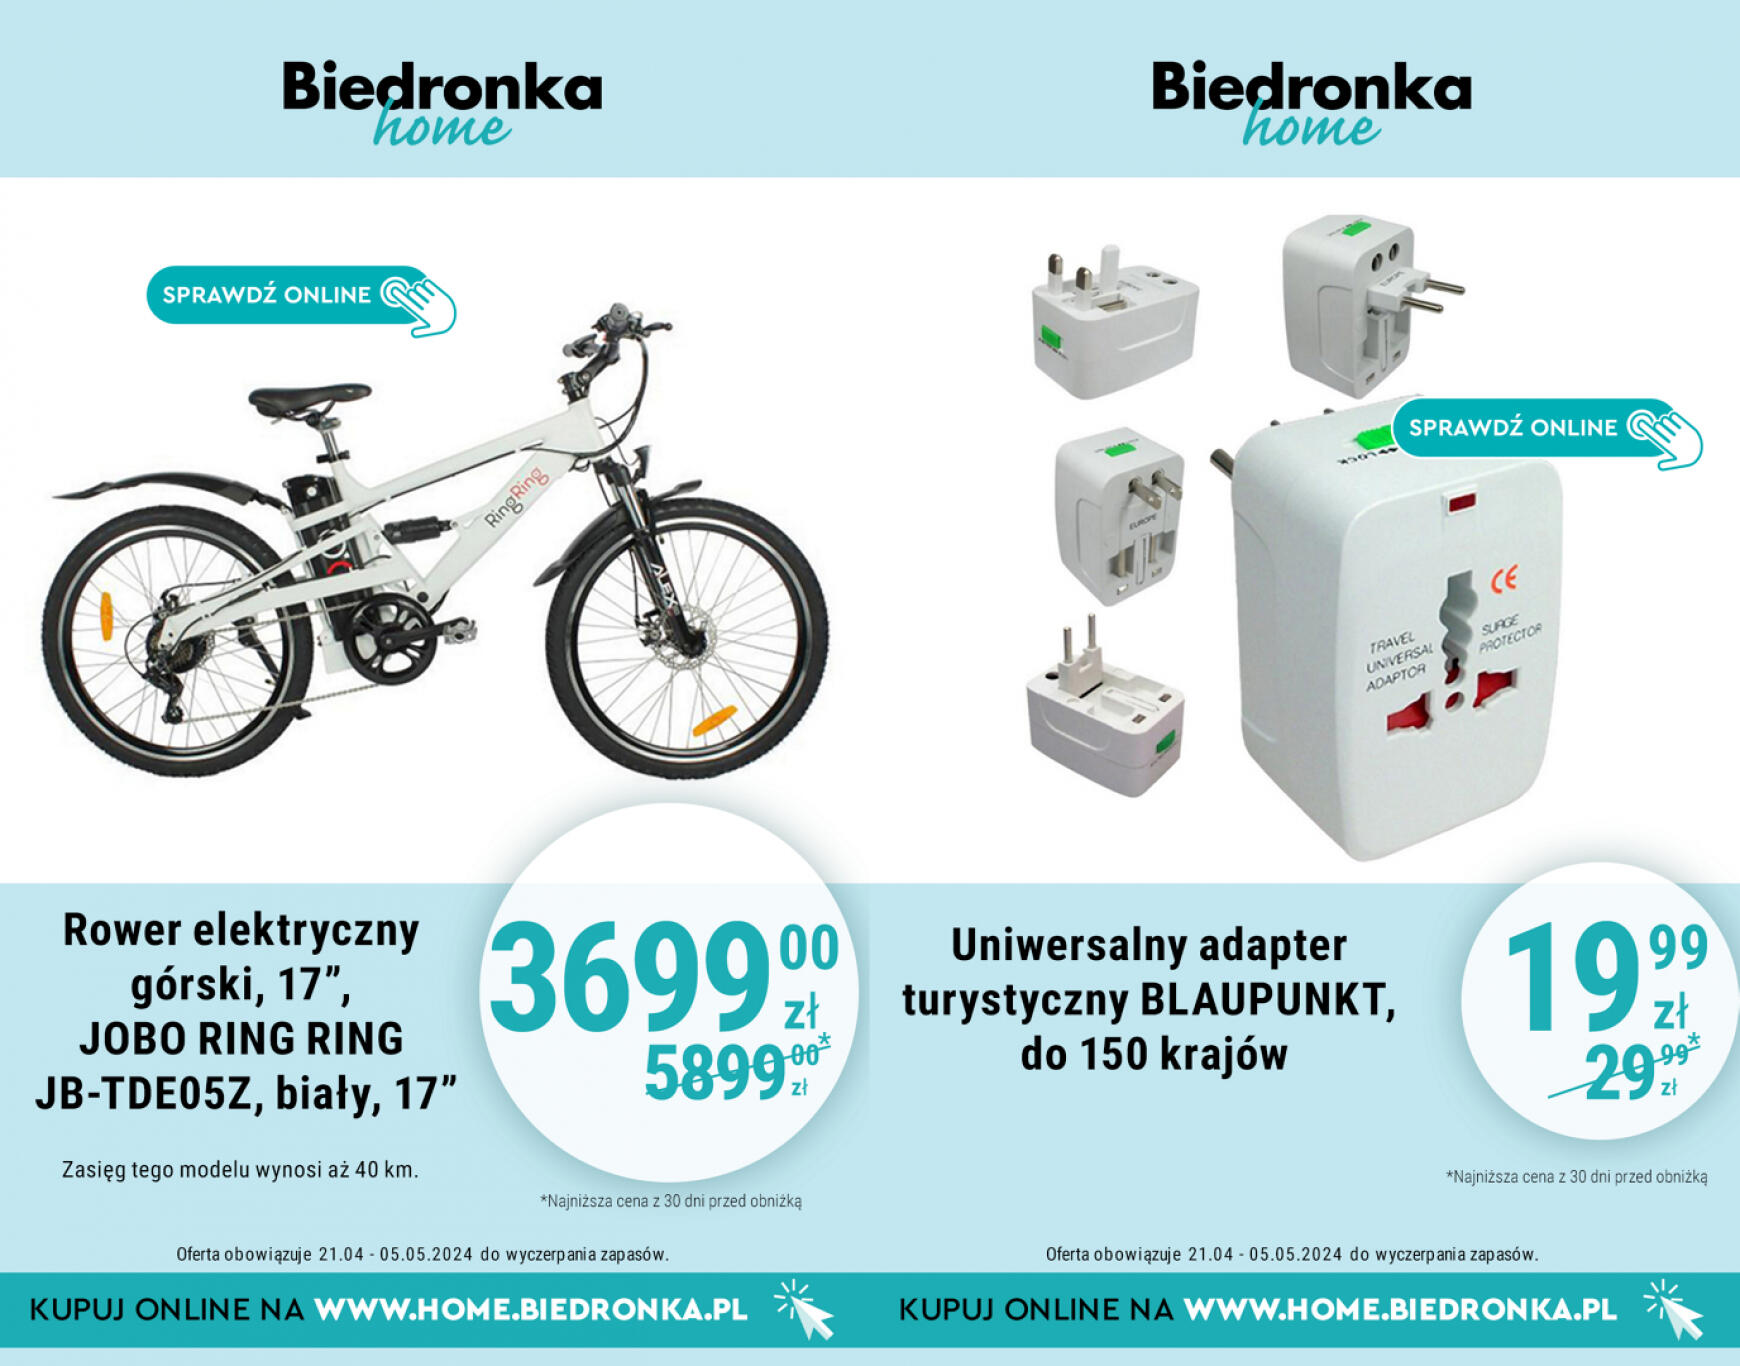 biedronka - Biedronka Home gazetka aktualna ważna od 21.04. - 05.05. - page: 3